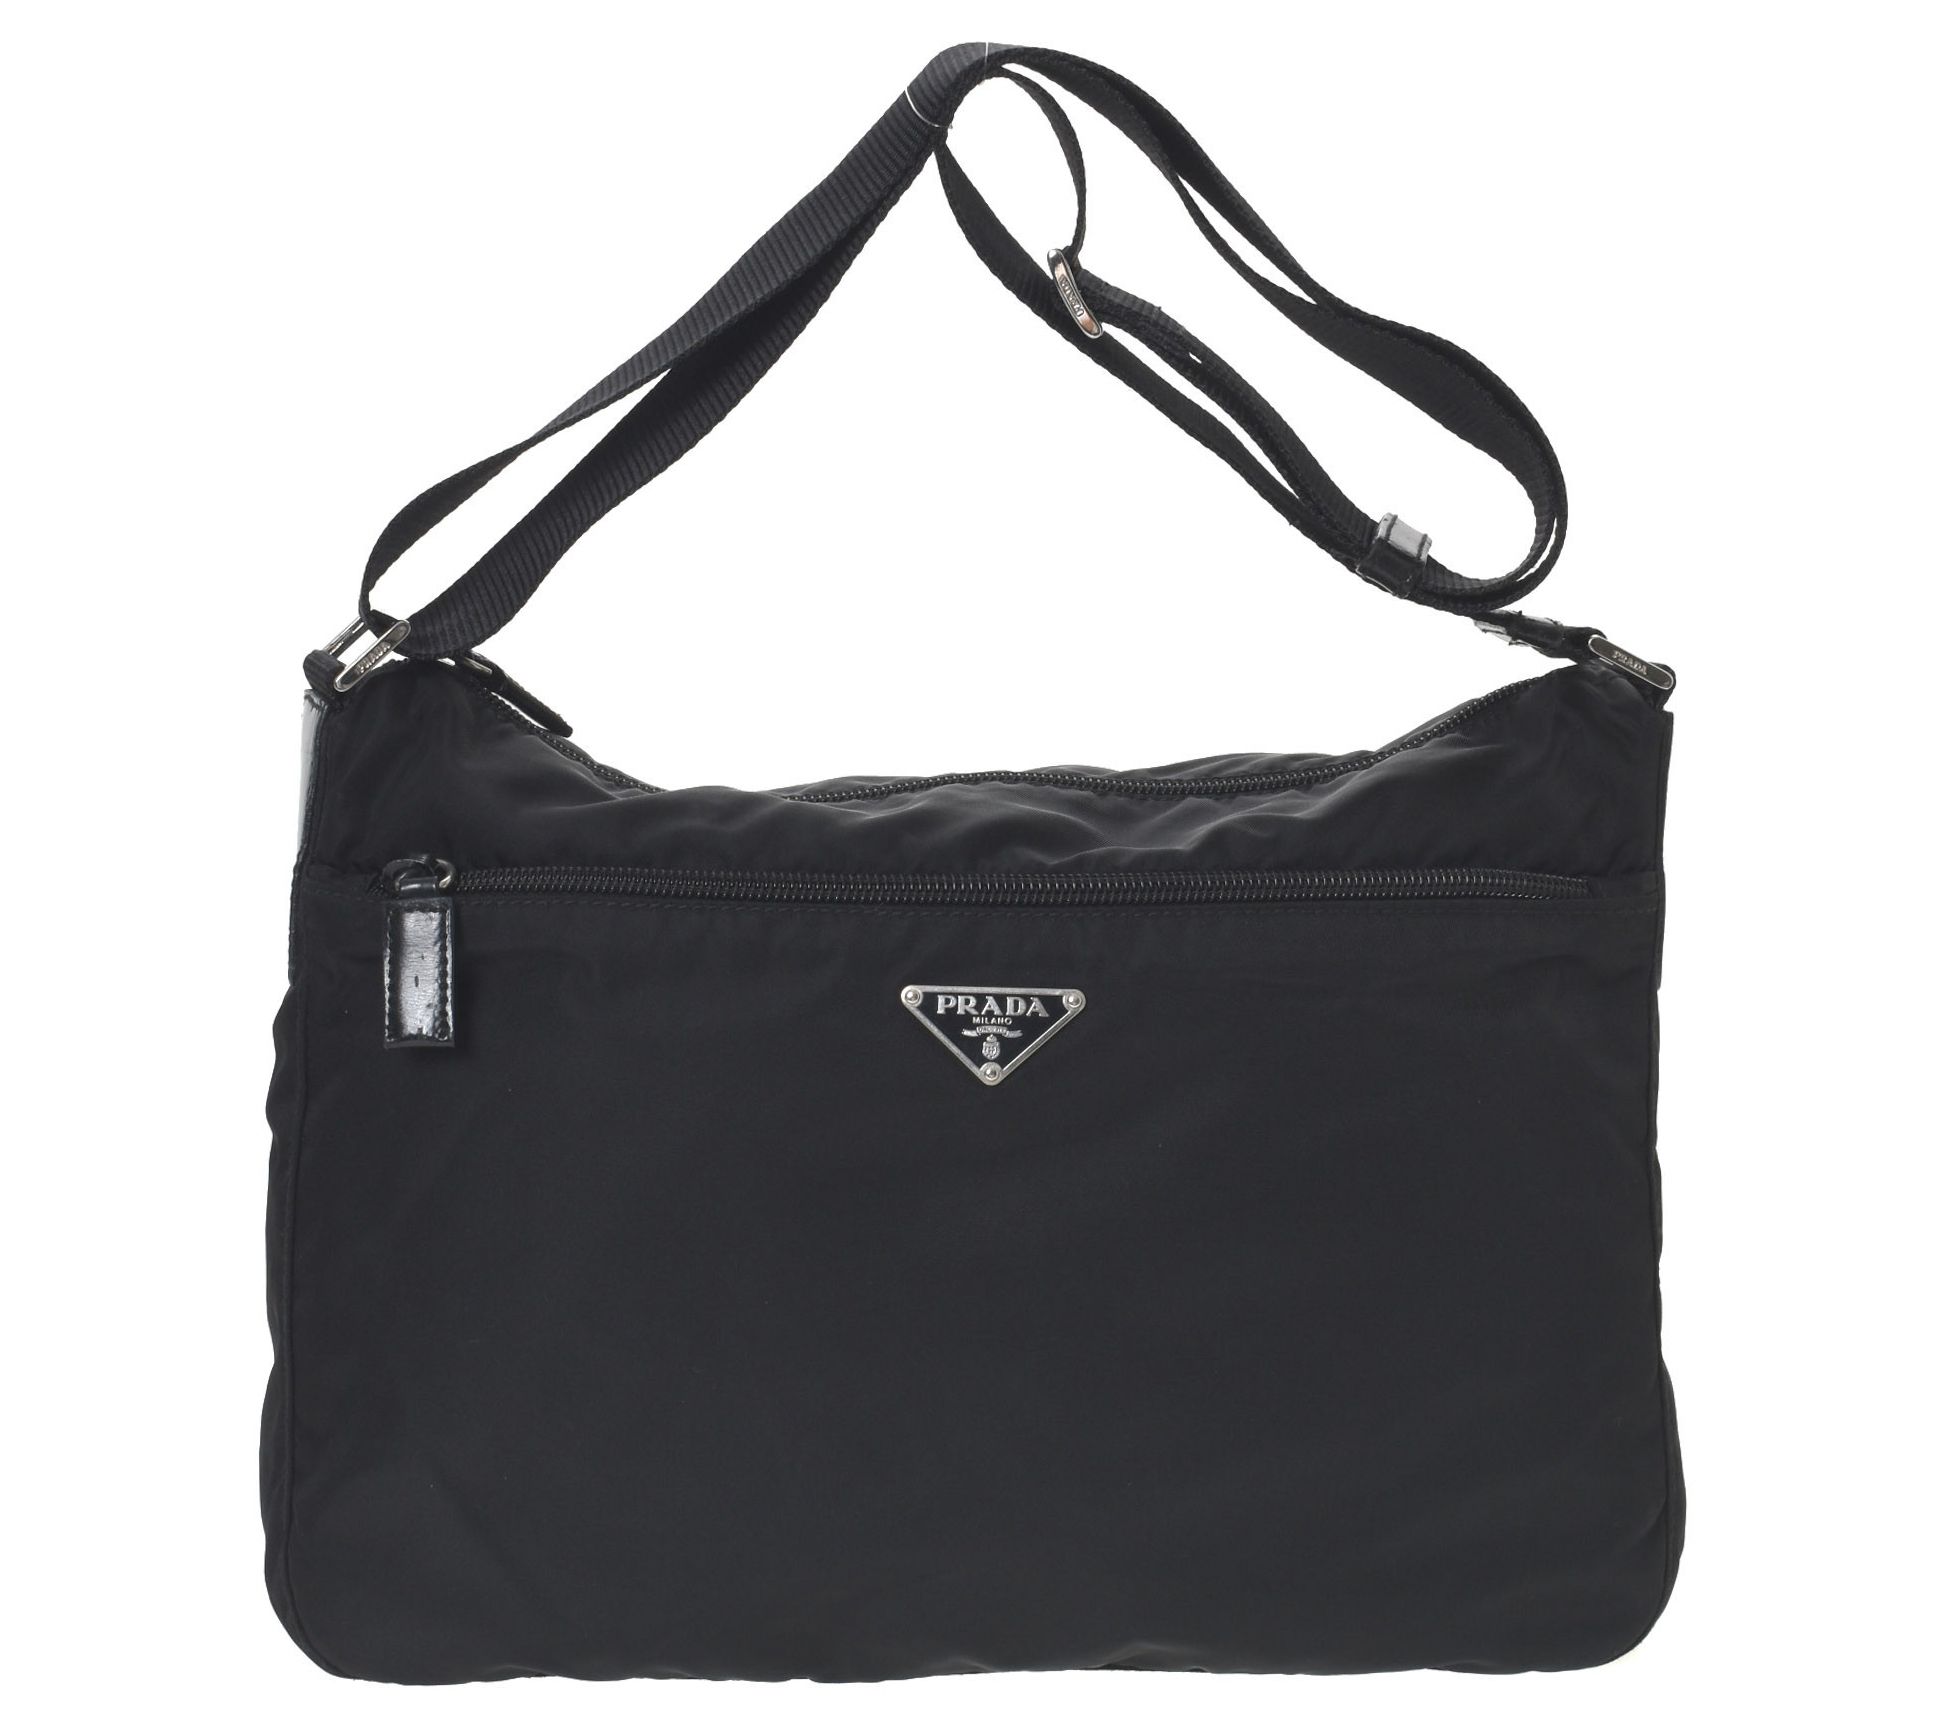 Prada monochrome shoulder bag - Gem